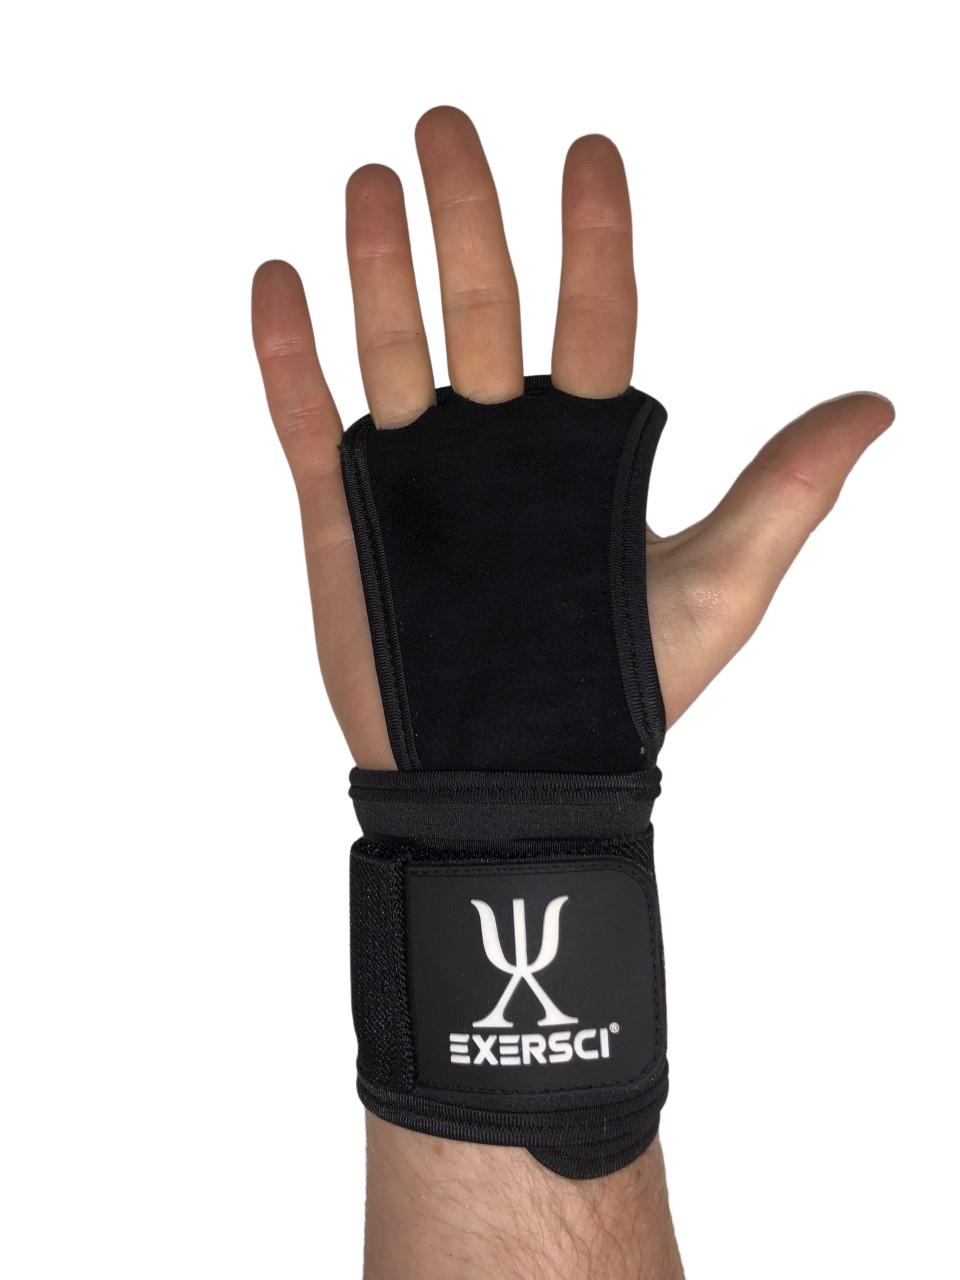 Exersci Fingerless Hand Grips